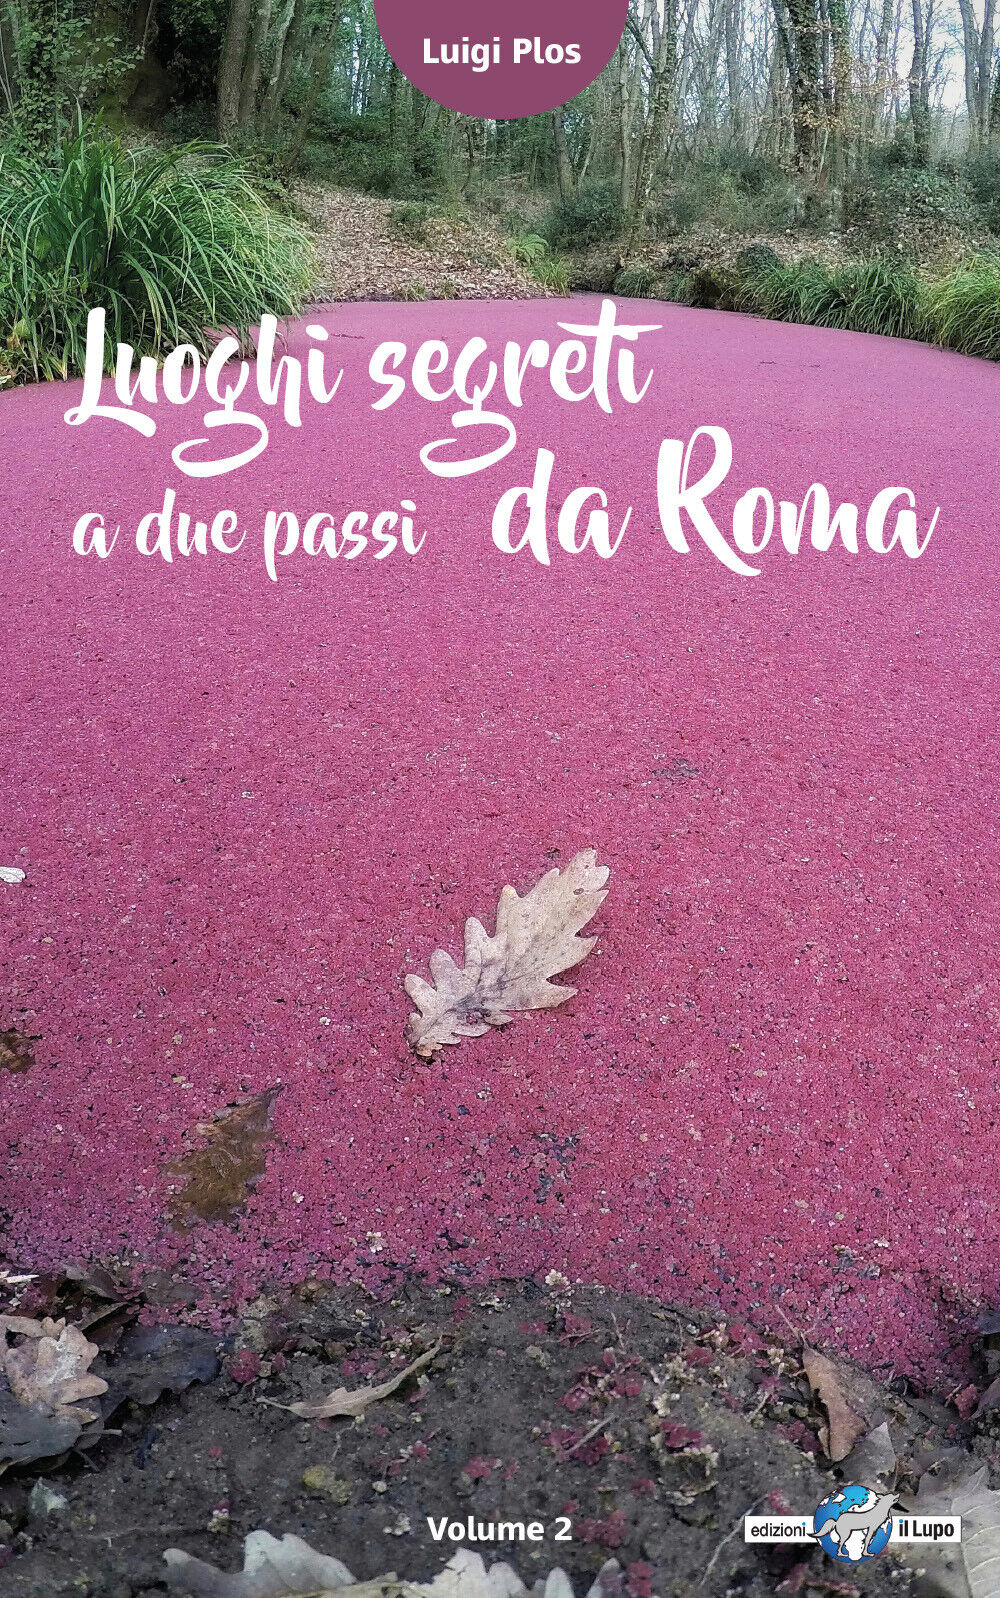 Luoghi segreti a due passi da Roma - Volume 2 - Luigi Plos, G. Gandini,  2017,  